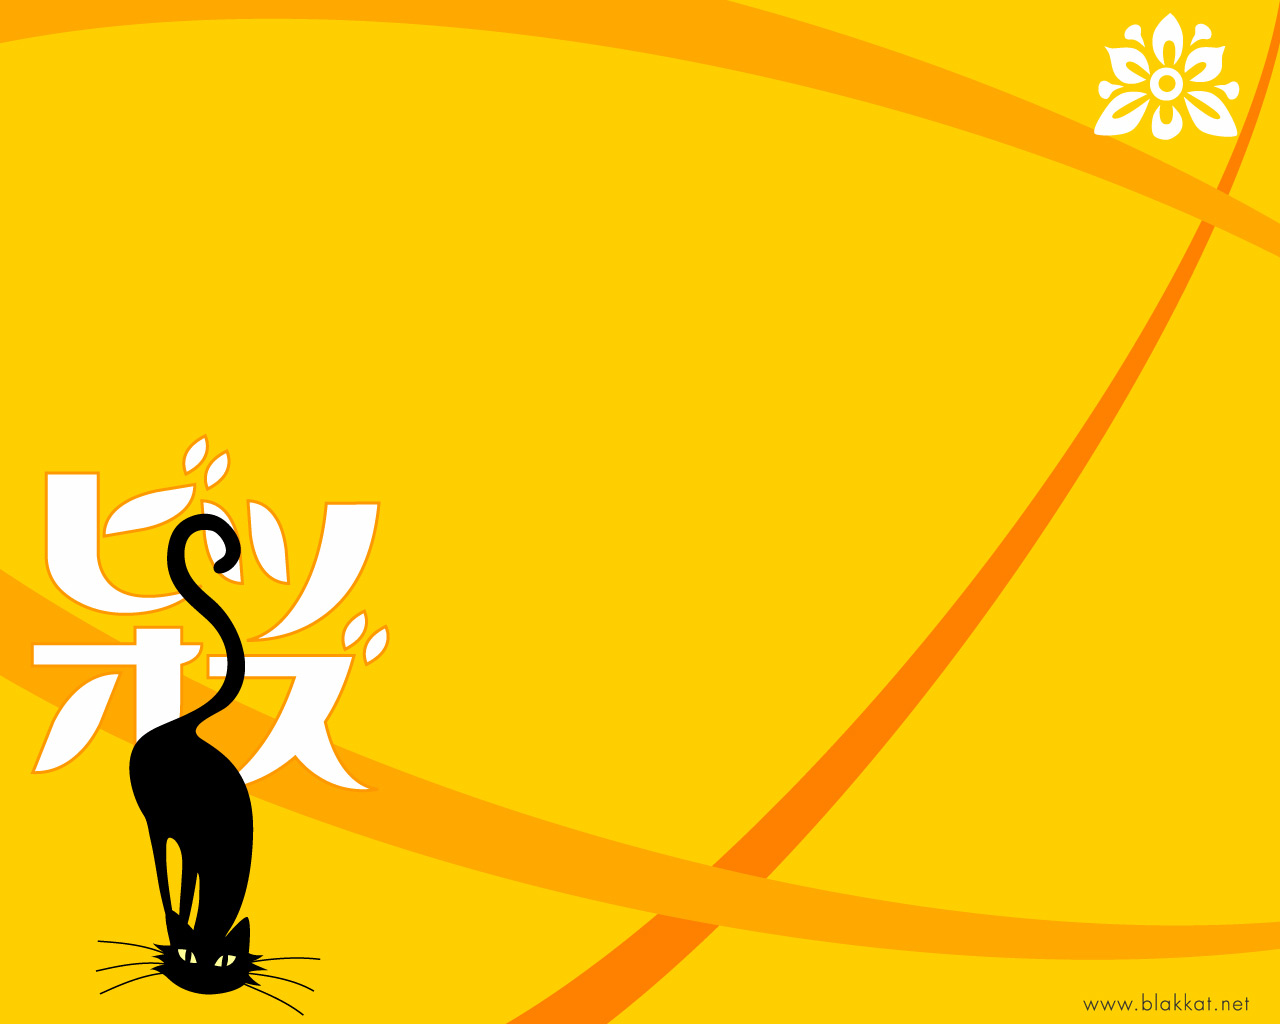 Скачать обои бесплатно Животные, Желтый, Кошка, Художественный картинка на рабочий стол ПК